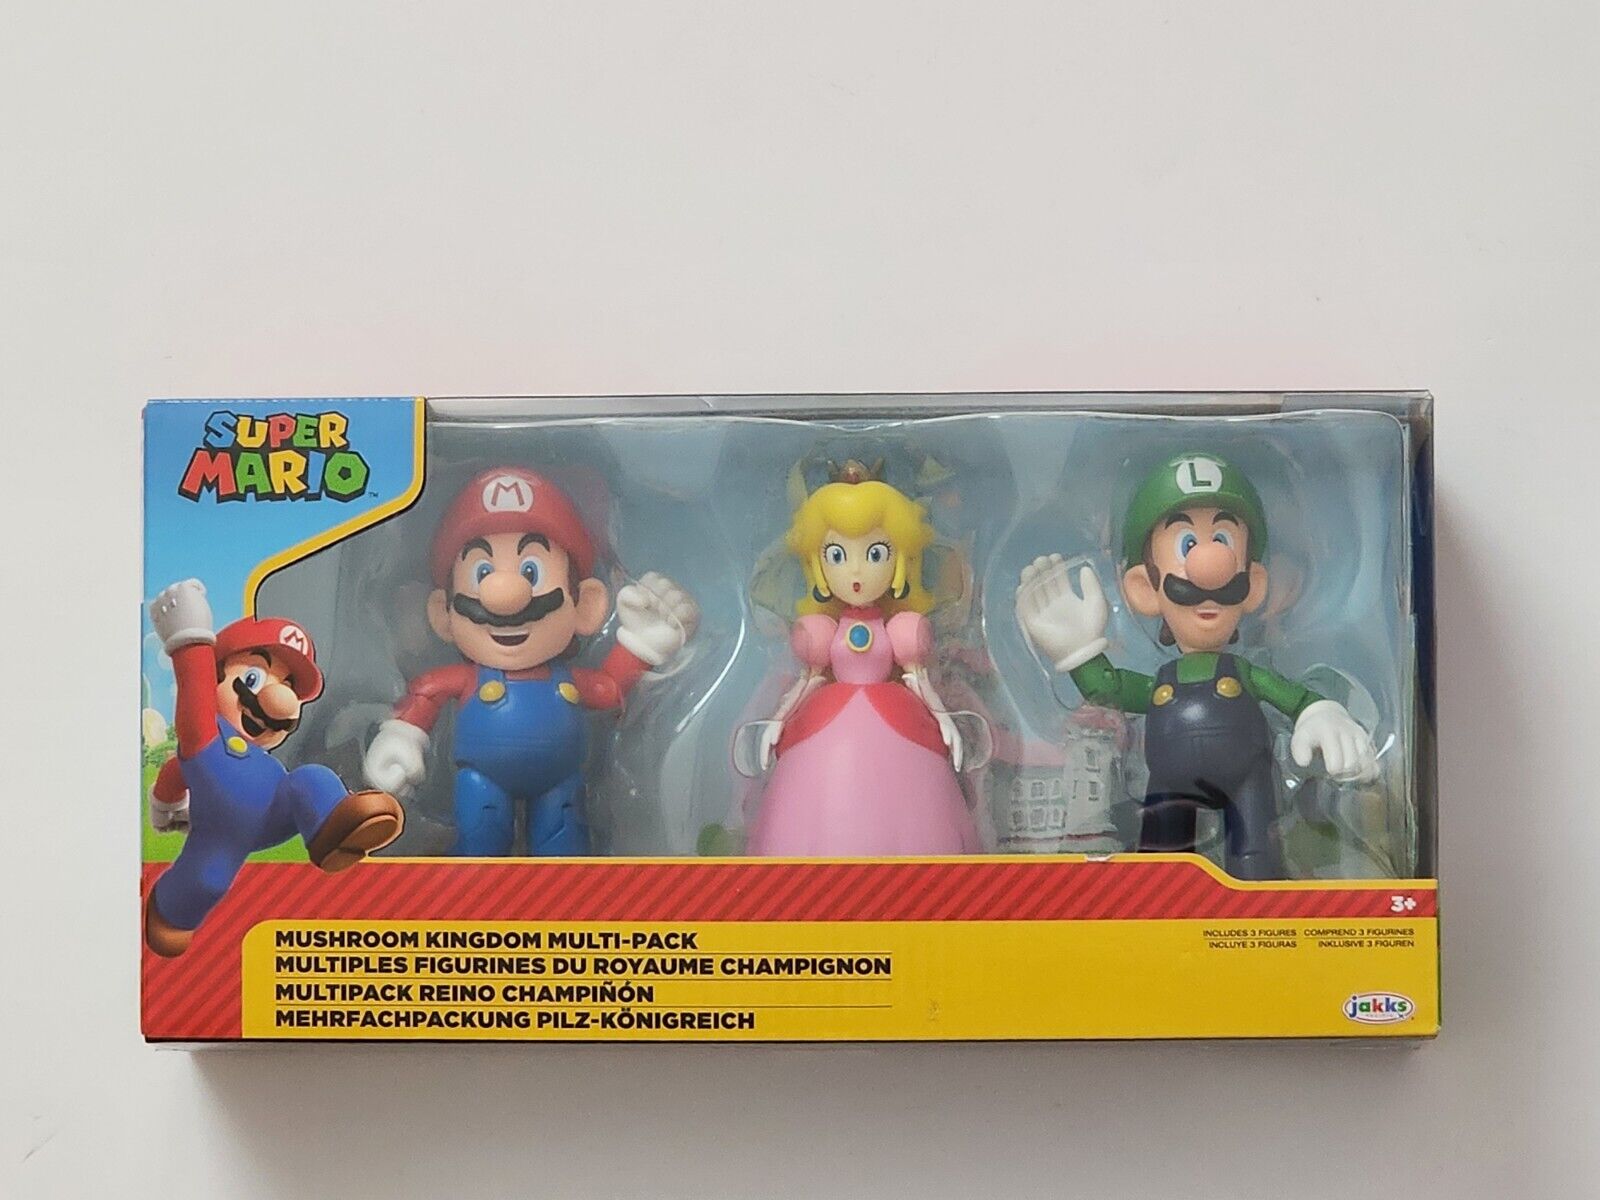 Pack de 3 figuras Super Mario Bros Wii